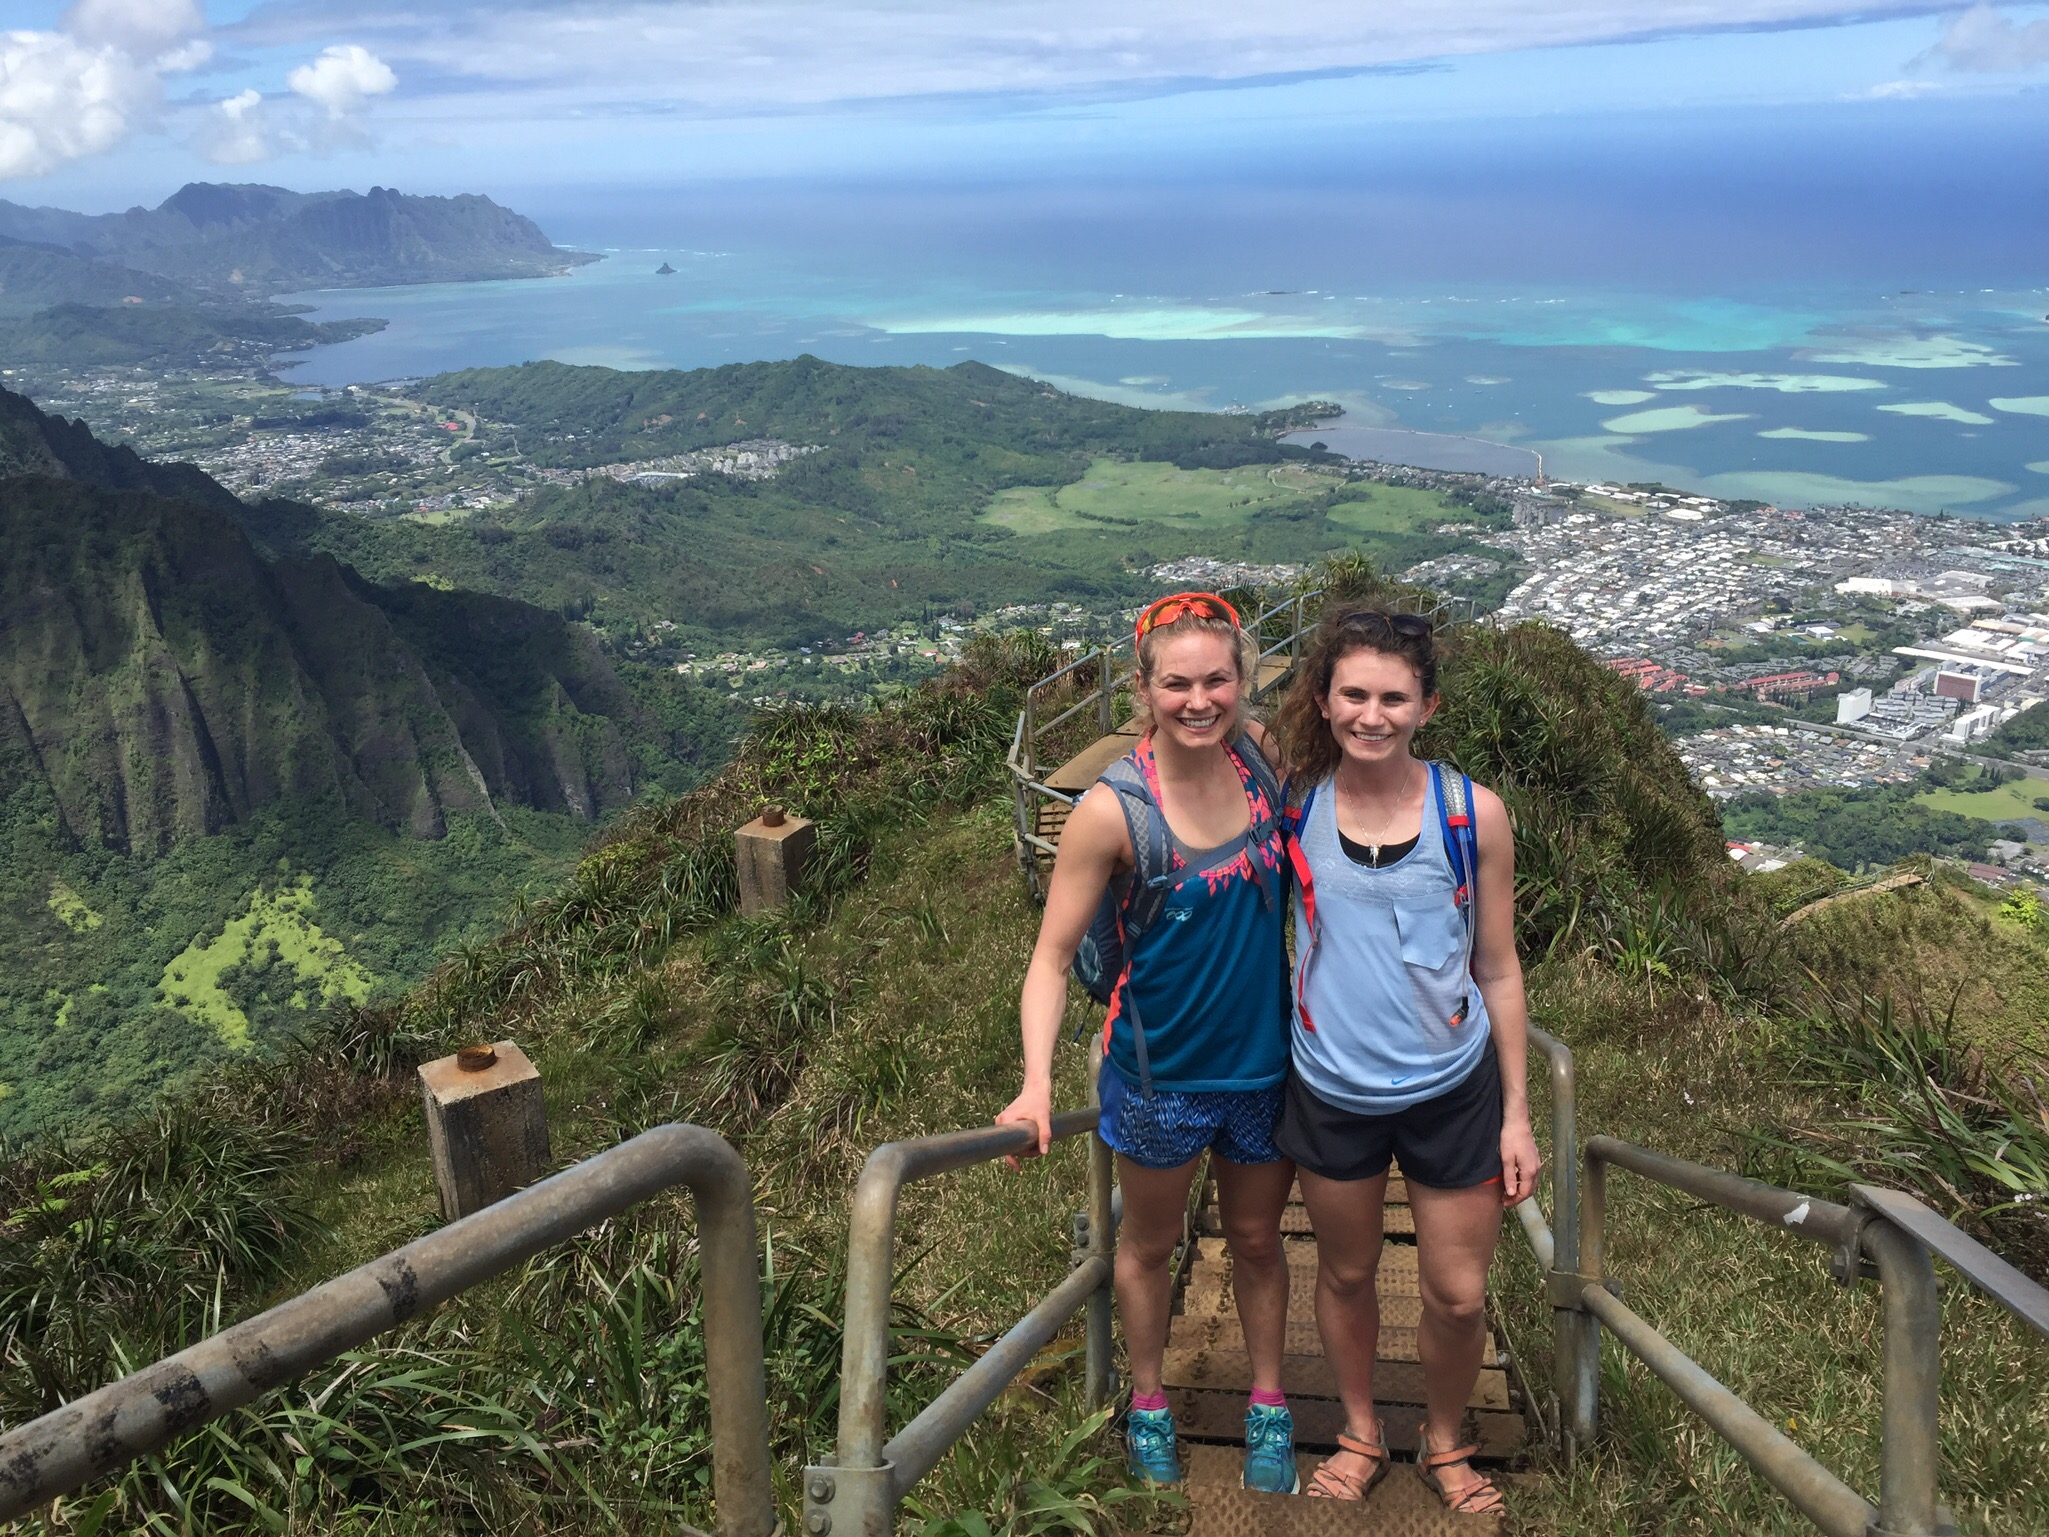 A week of adventure in Hawaii!